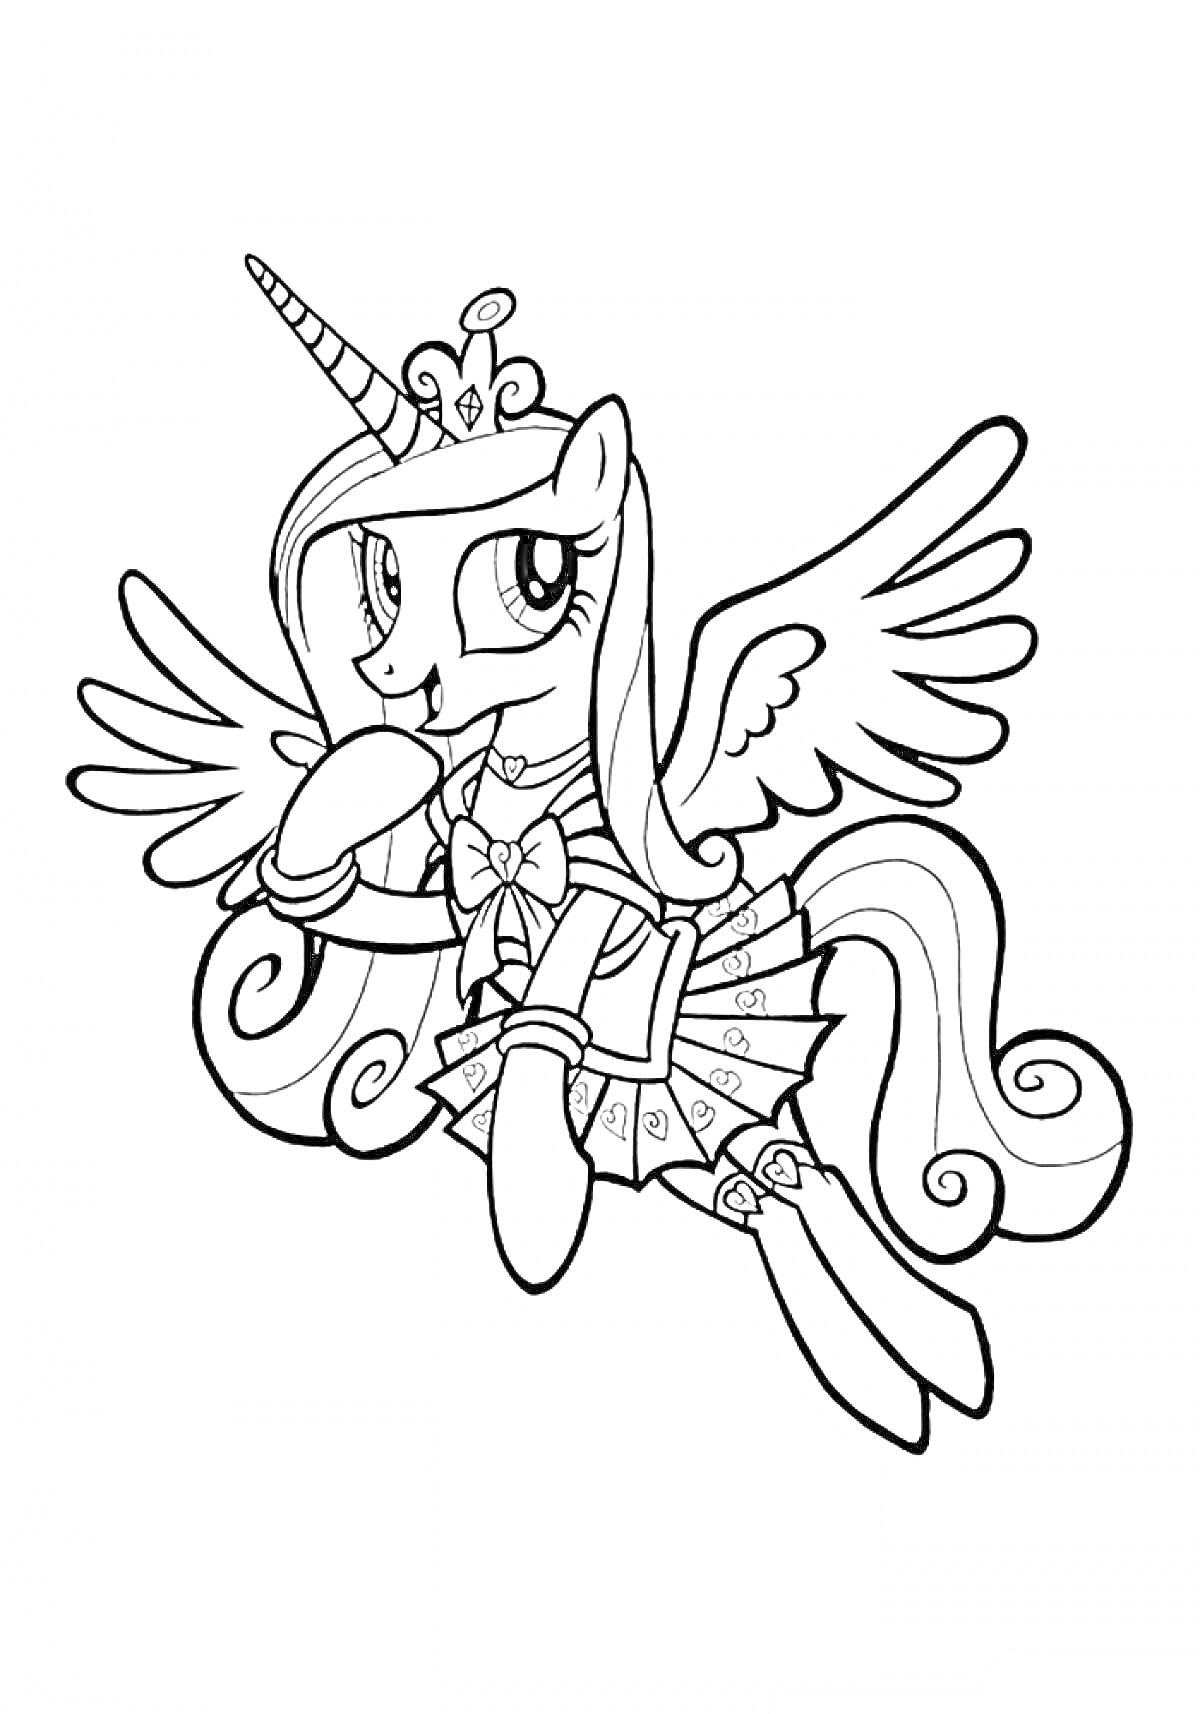 Раскраска Пони Каденс с короной, крыльями и магическим рогом, в платье с сердечками